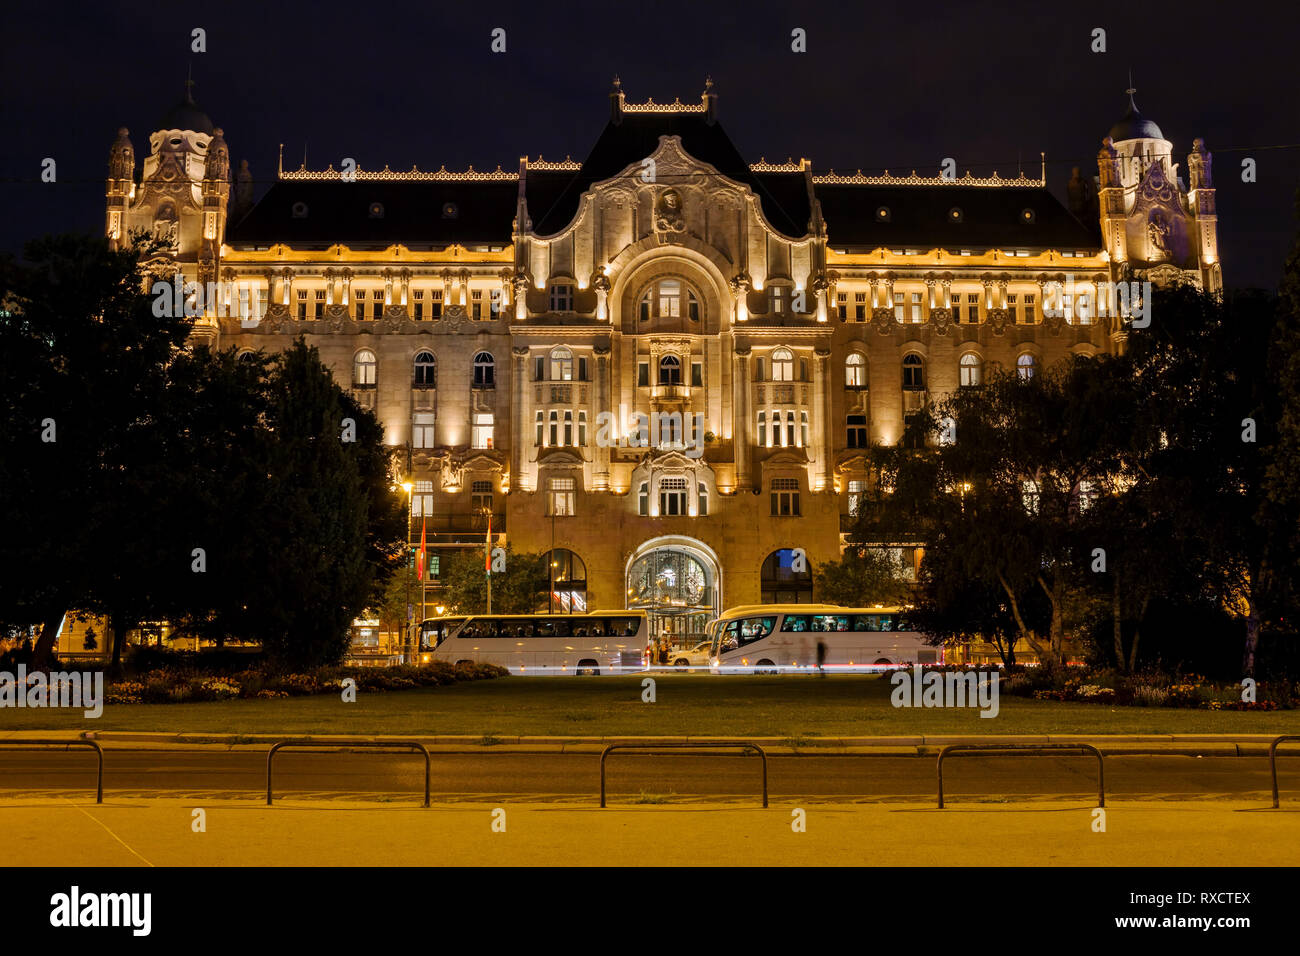 Ungarn, Budapest, im Gresham Palace (Gresham - palota) Gebäude von 190 r bei Nacht beleuchtet, Jugendstil Architektur, Four Seasons Hotel Budapest Stockfoto